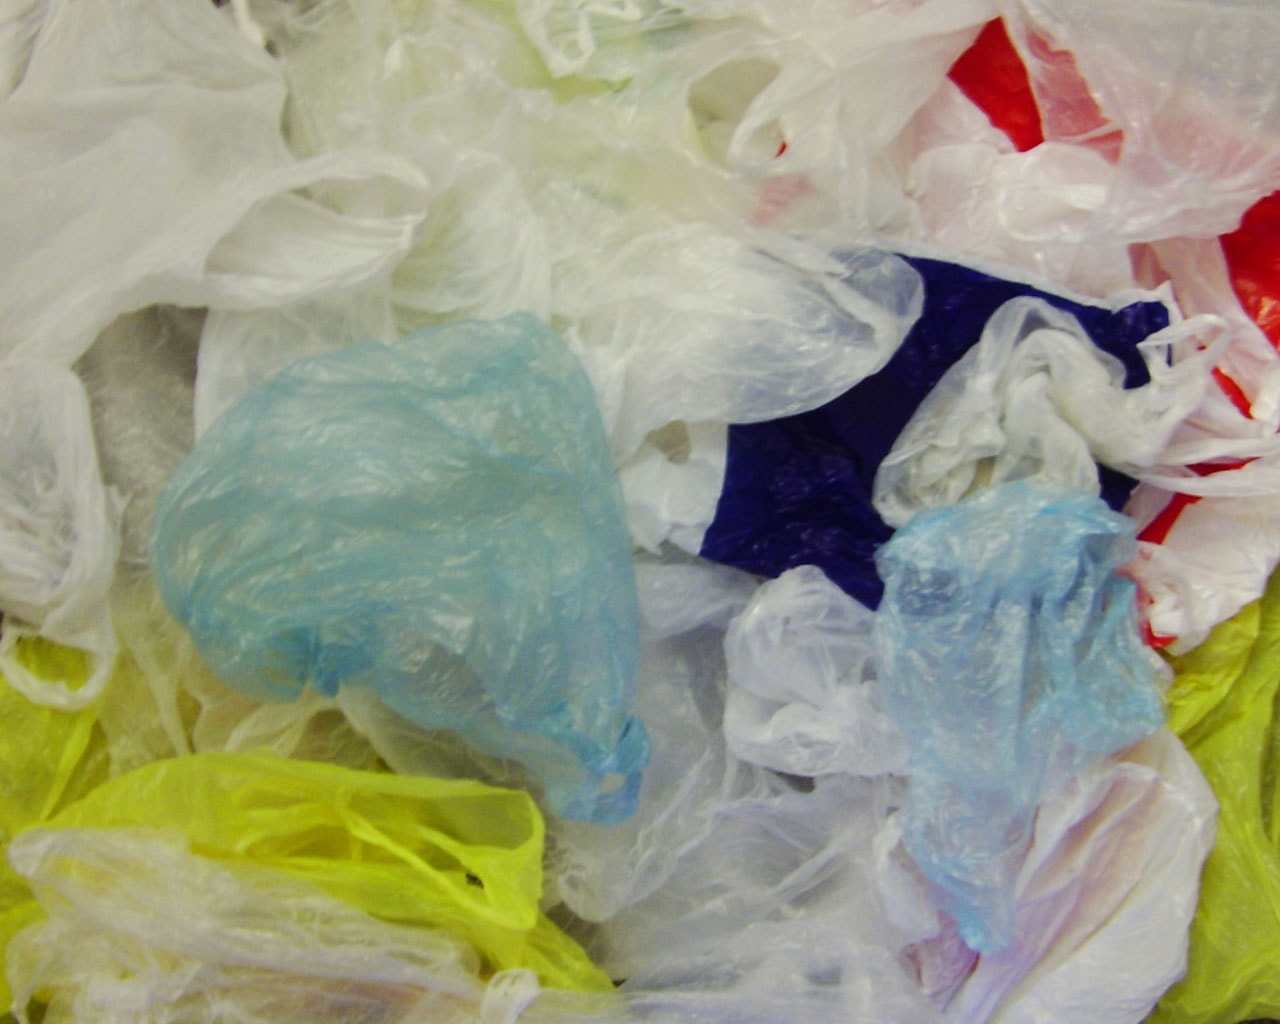 Vabilo k sodelovanju v študiji: Covid-19 in uporaba plastike za enkratno uporabo v gospodinjstvih